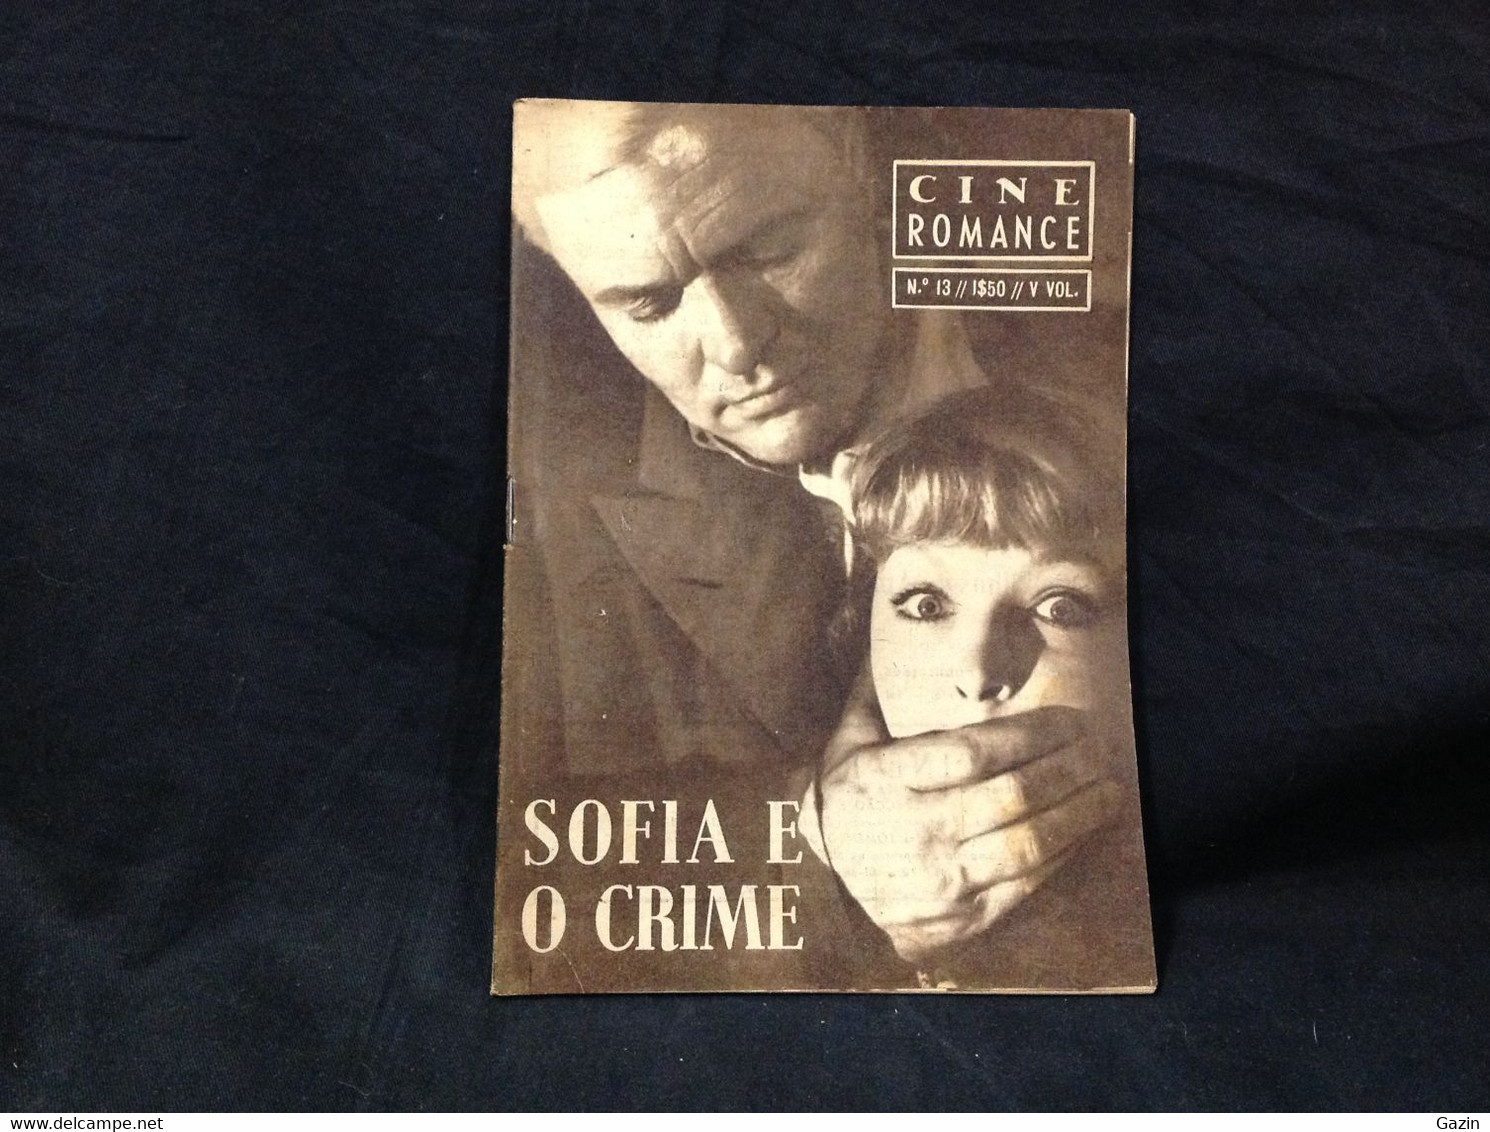 C2/23 - Sofia E O Crime - Marina Vlady * Peter Janeick -  Portugal Mag - Cine Romance -1956 - Eugénio Salvador - Bioscoop En Televisie